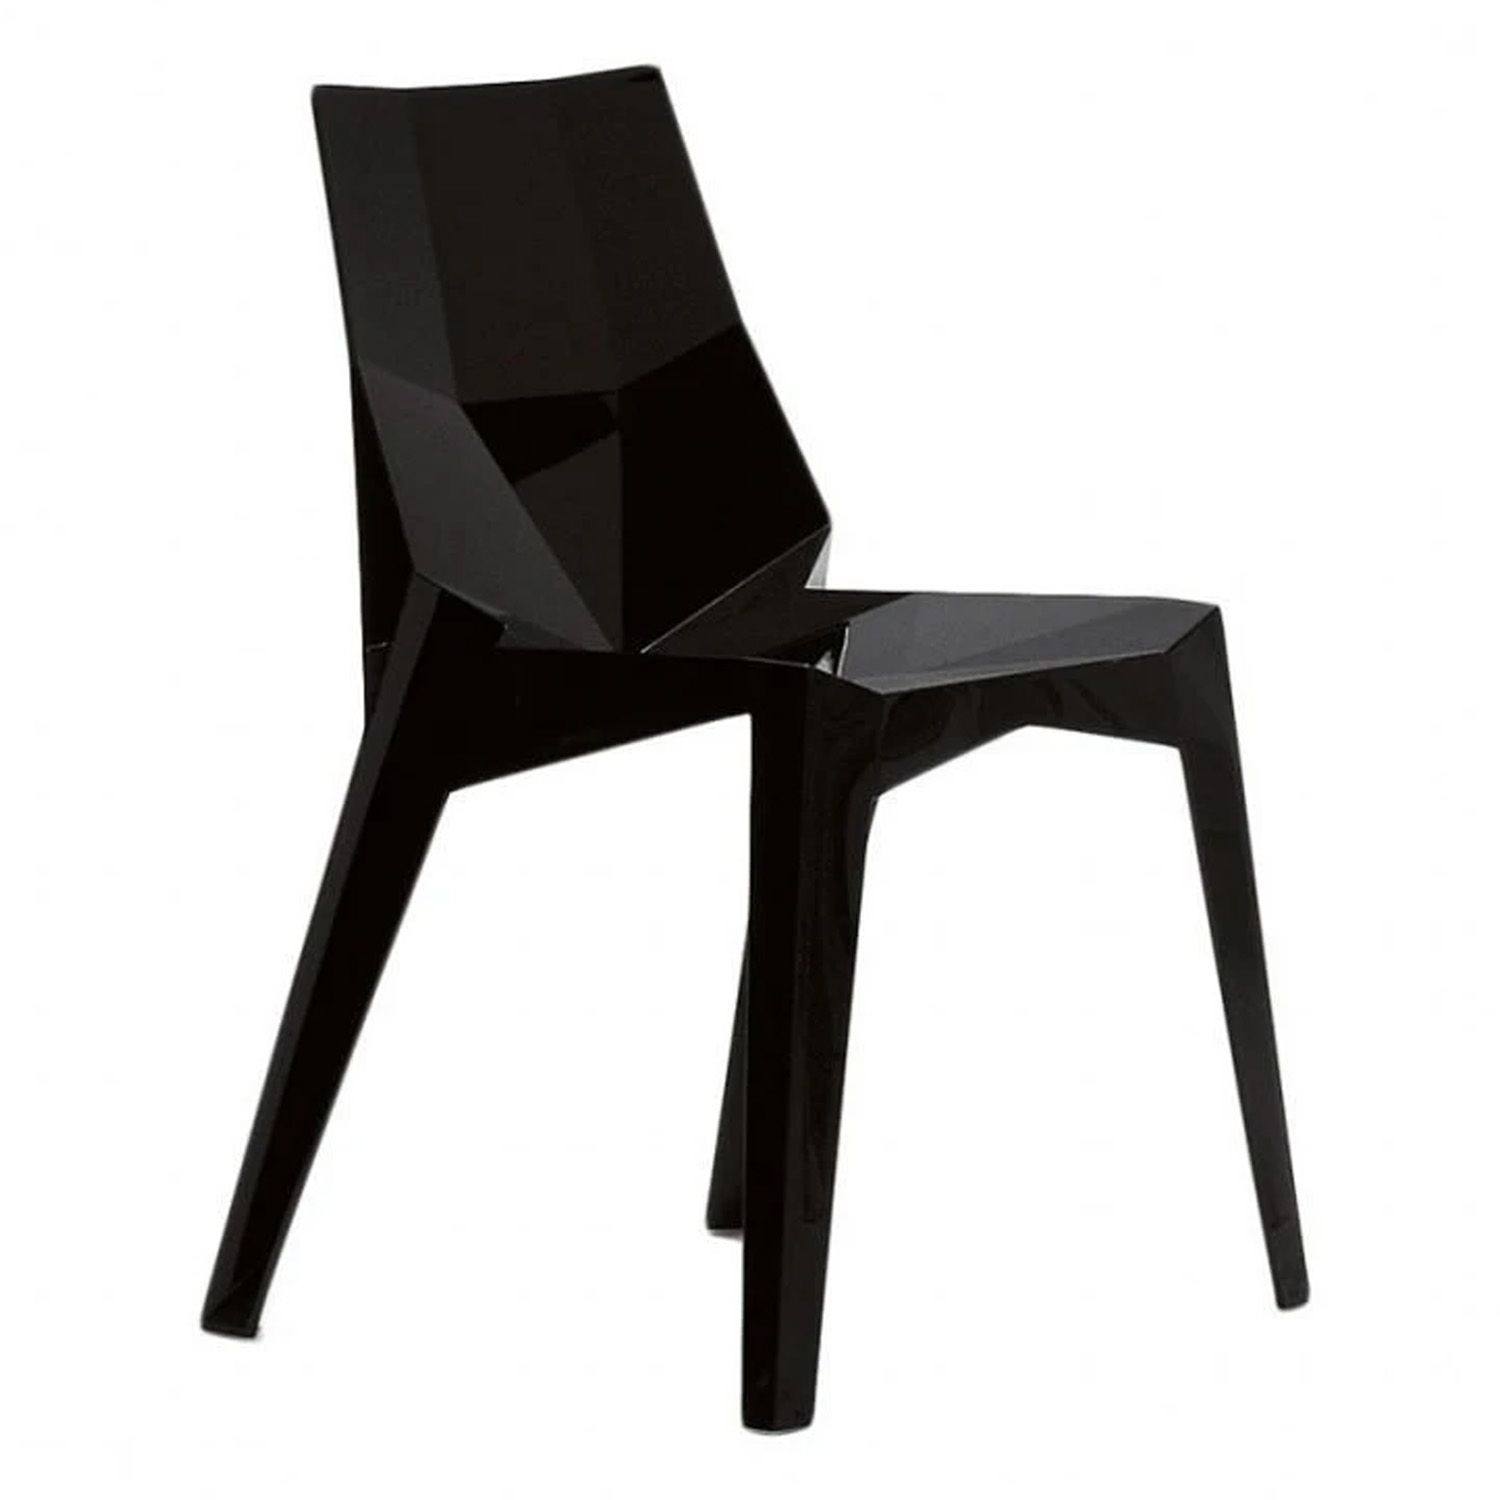 Výprodej BONALDO židle POLY (černá, neprůhledná) - DESIGNPROPAGANDA